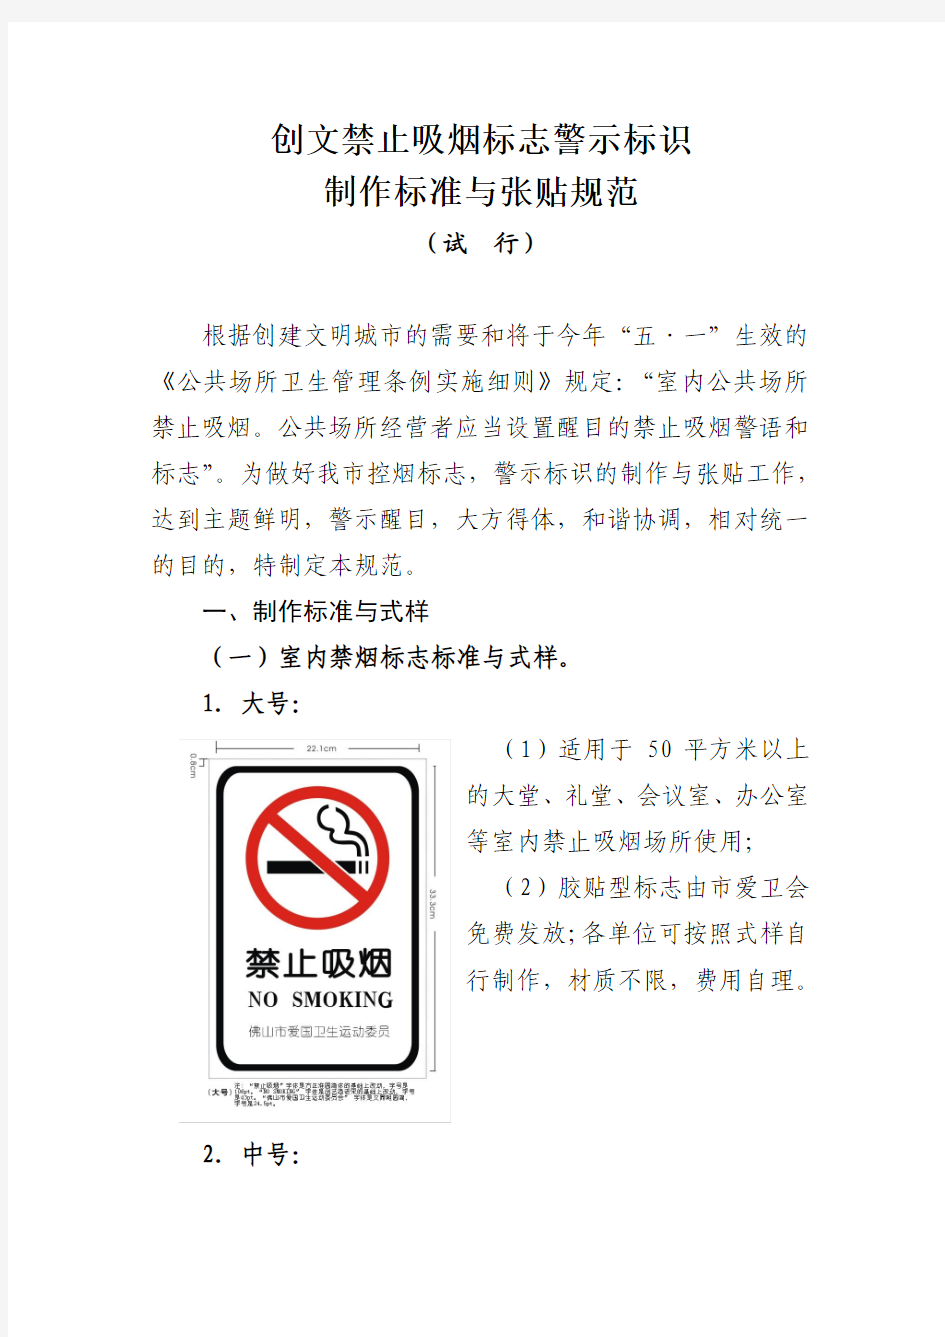 创文禁止吸烟标志警示标识制作标准与张贴规范